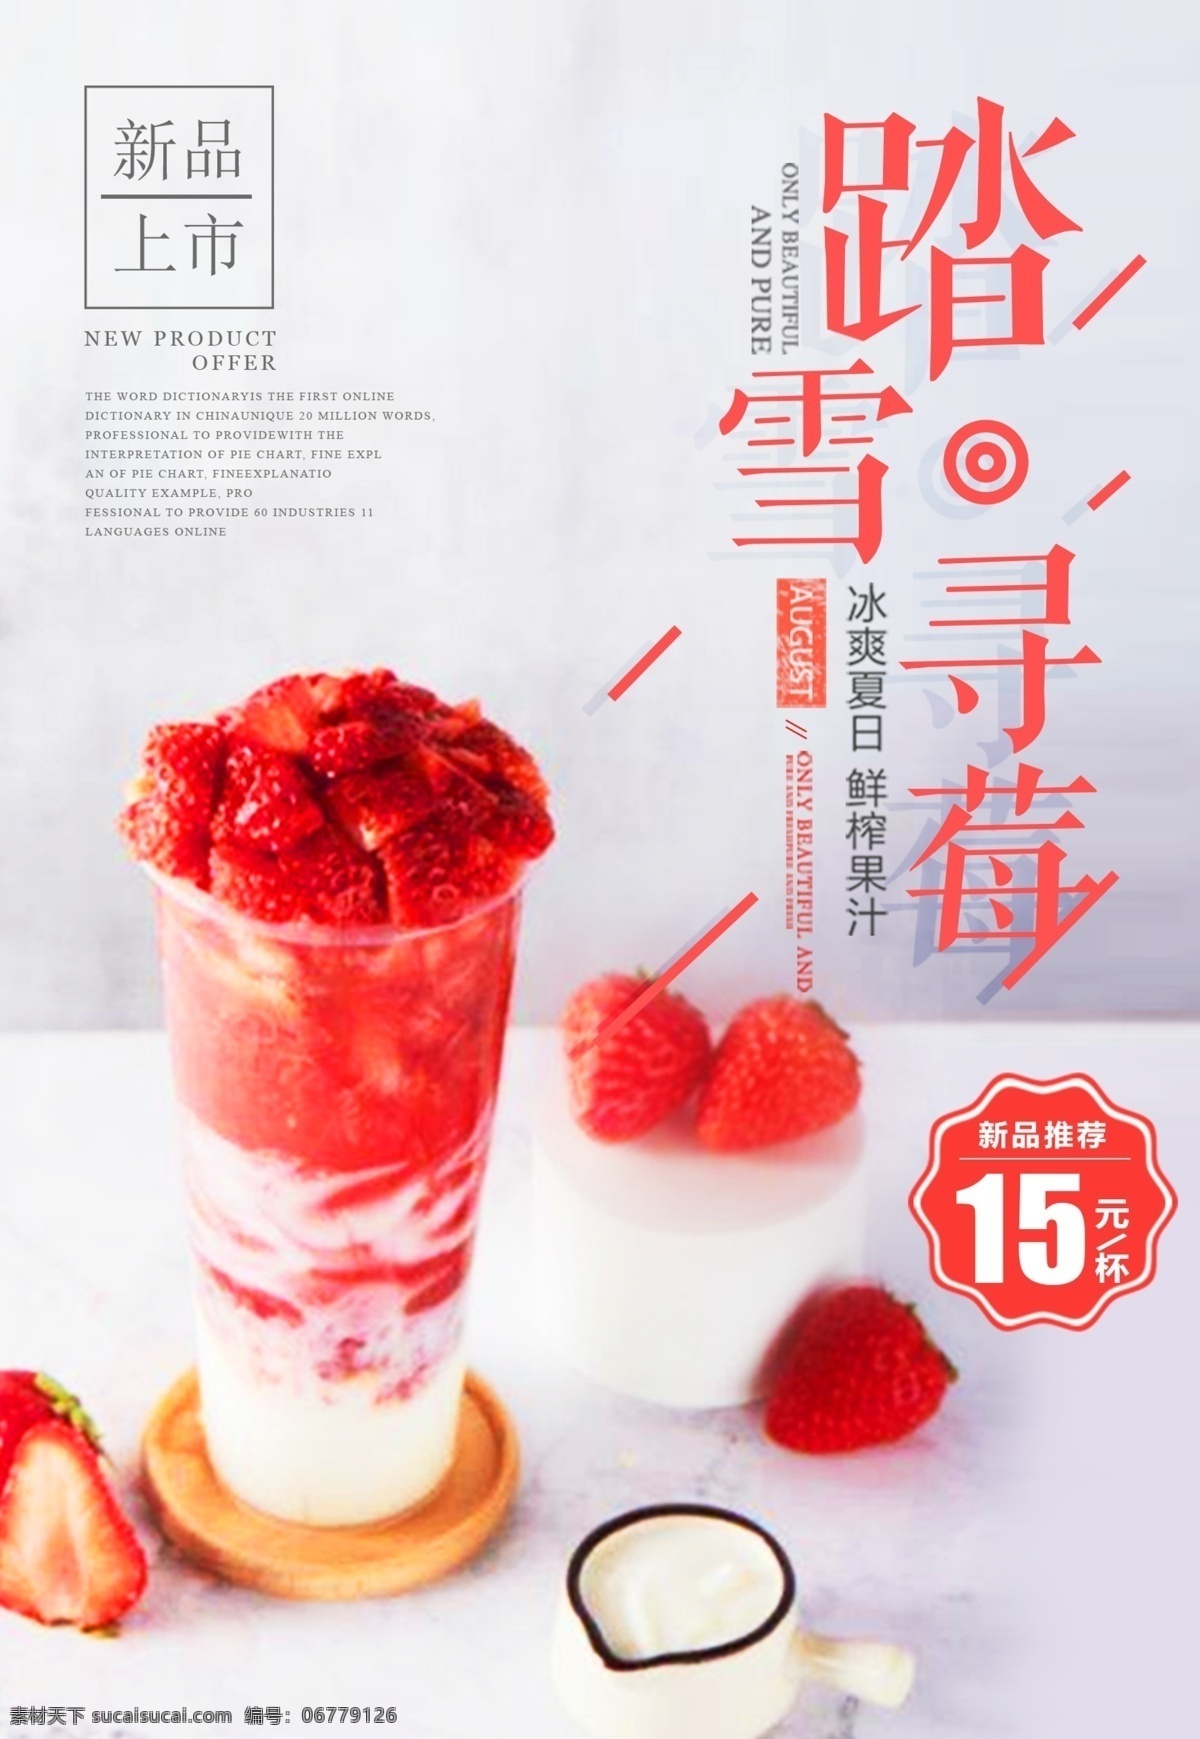 奶茶海报 奶茶 甜品 饮品 红色 草莓 文化艺术 传统文化